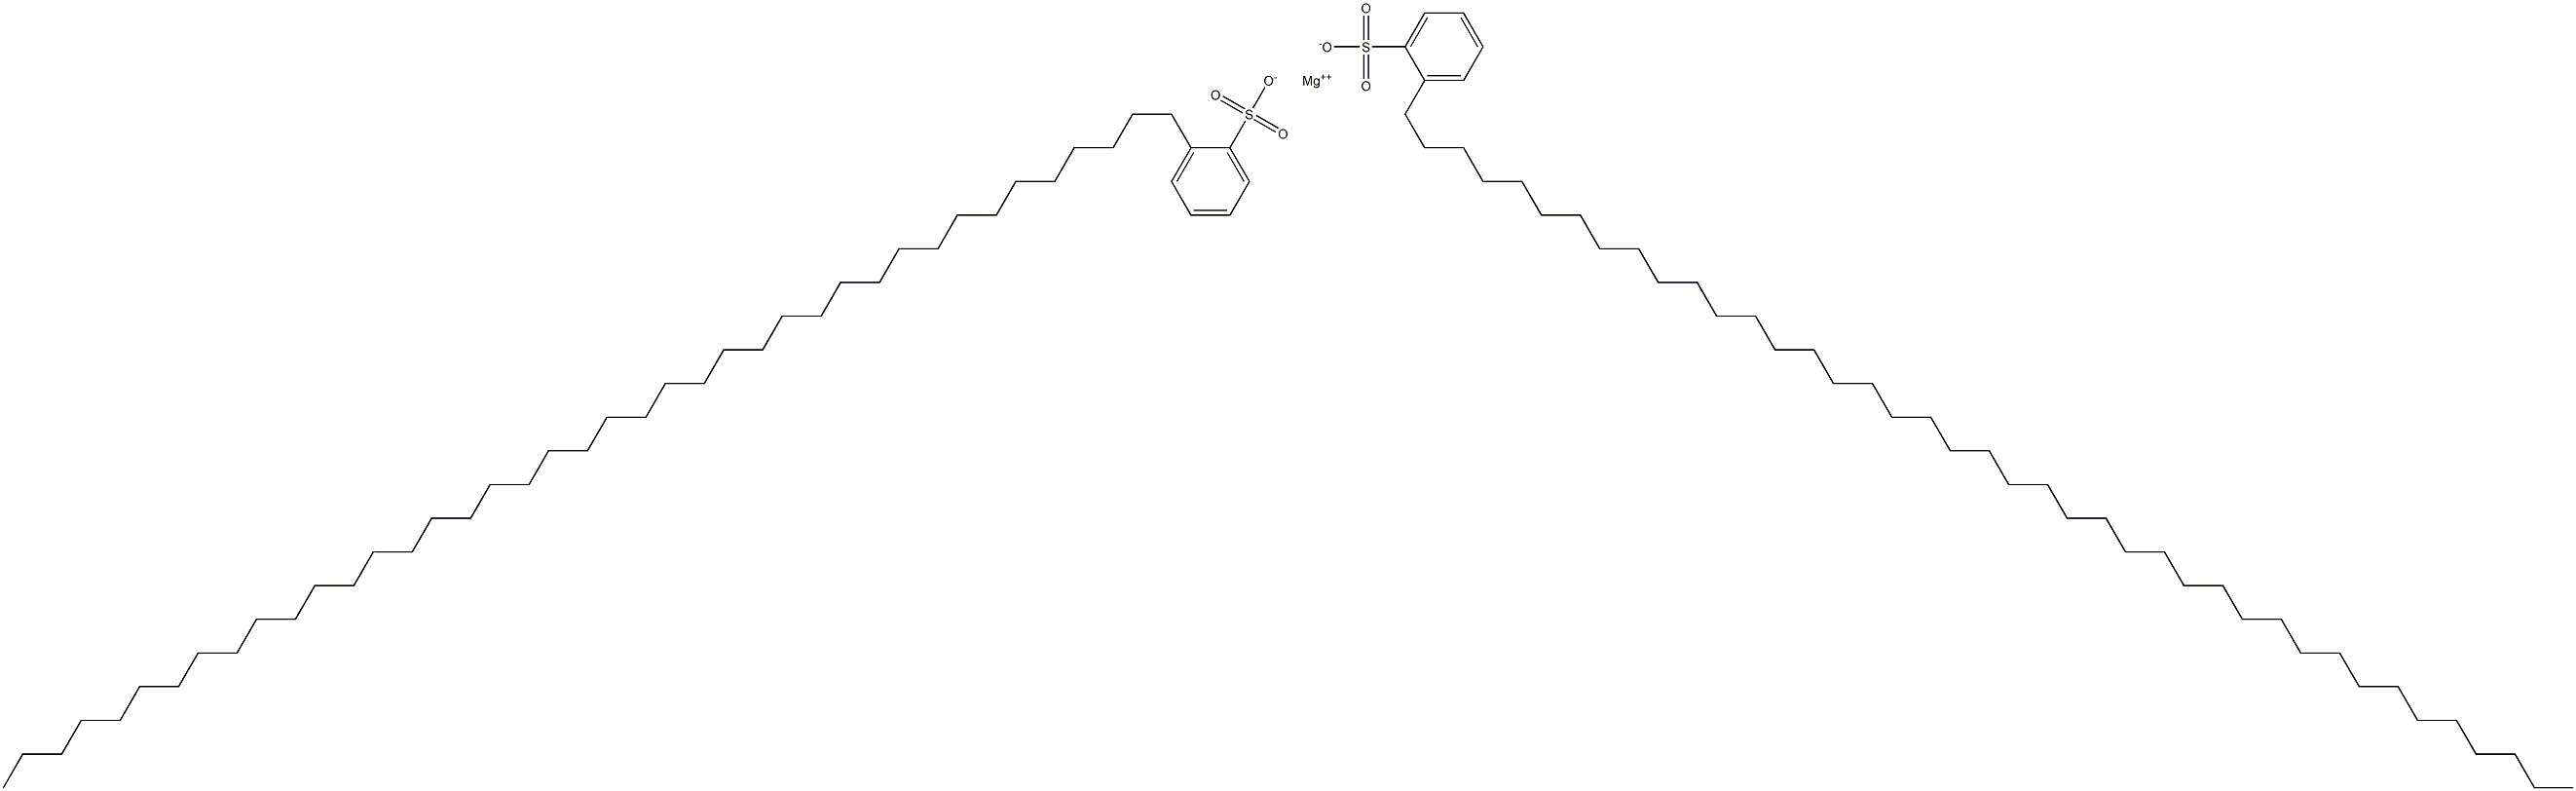 Bis[2-(hentetracontan-1-yl)benzenesulfonic acid]magnesium salt|